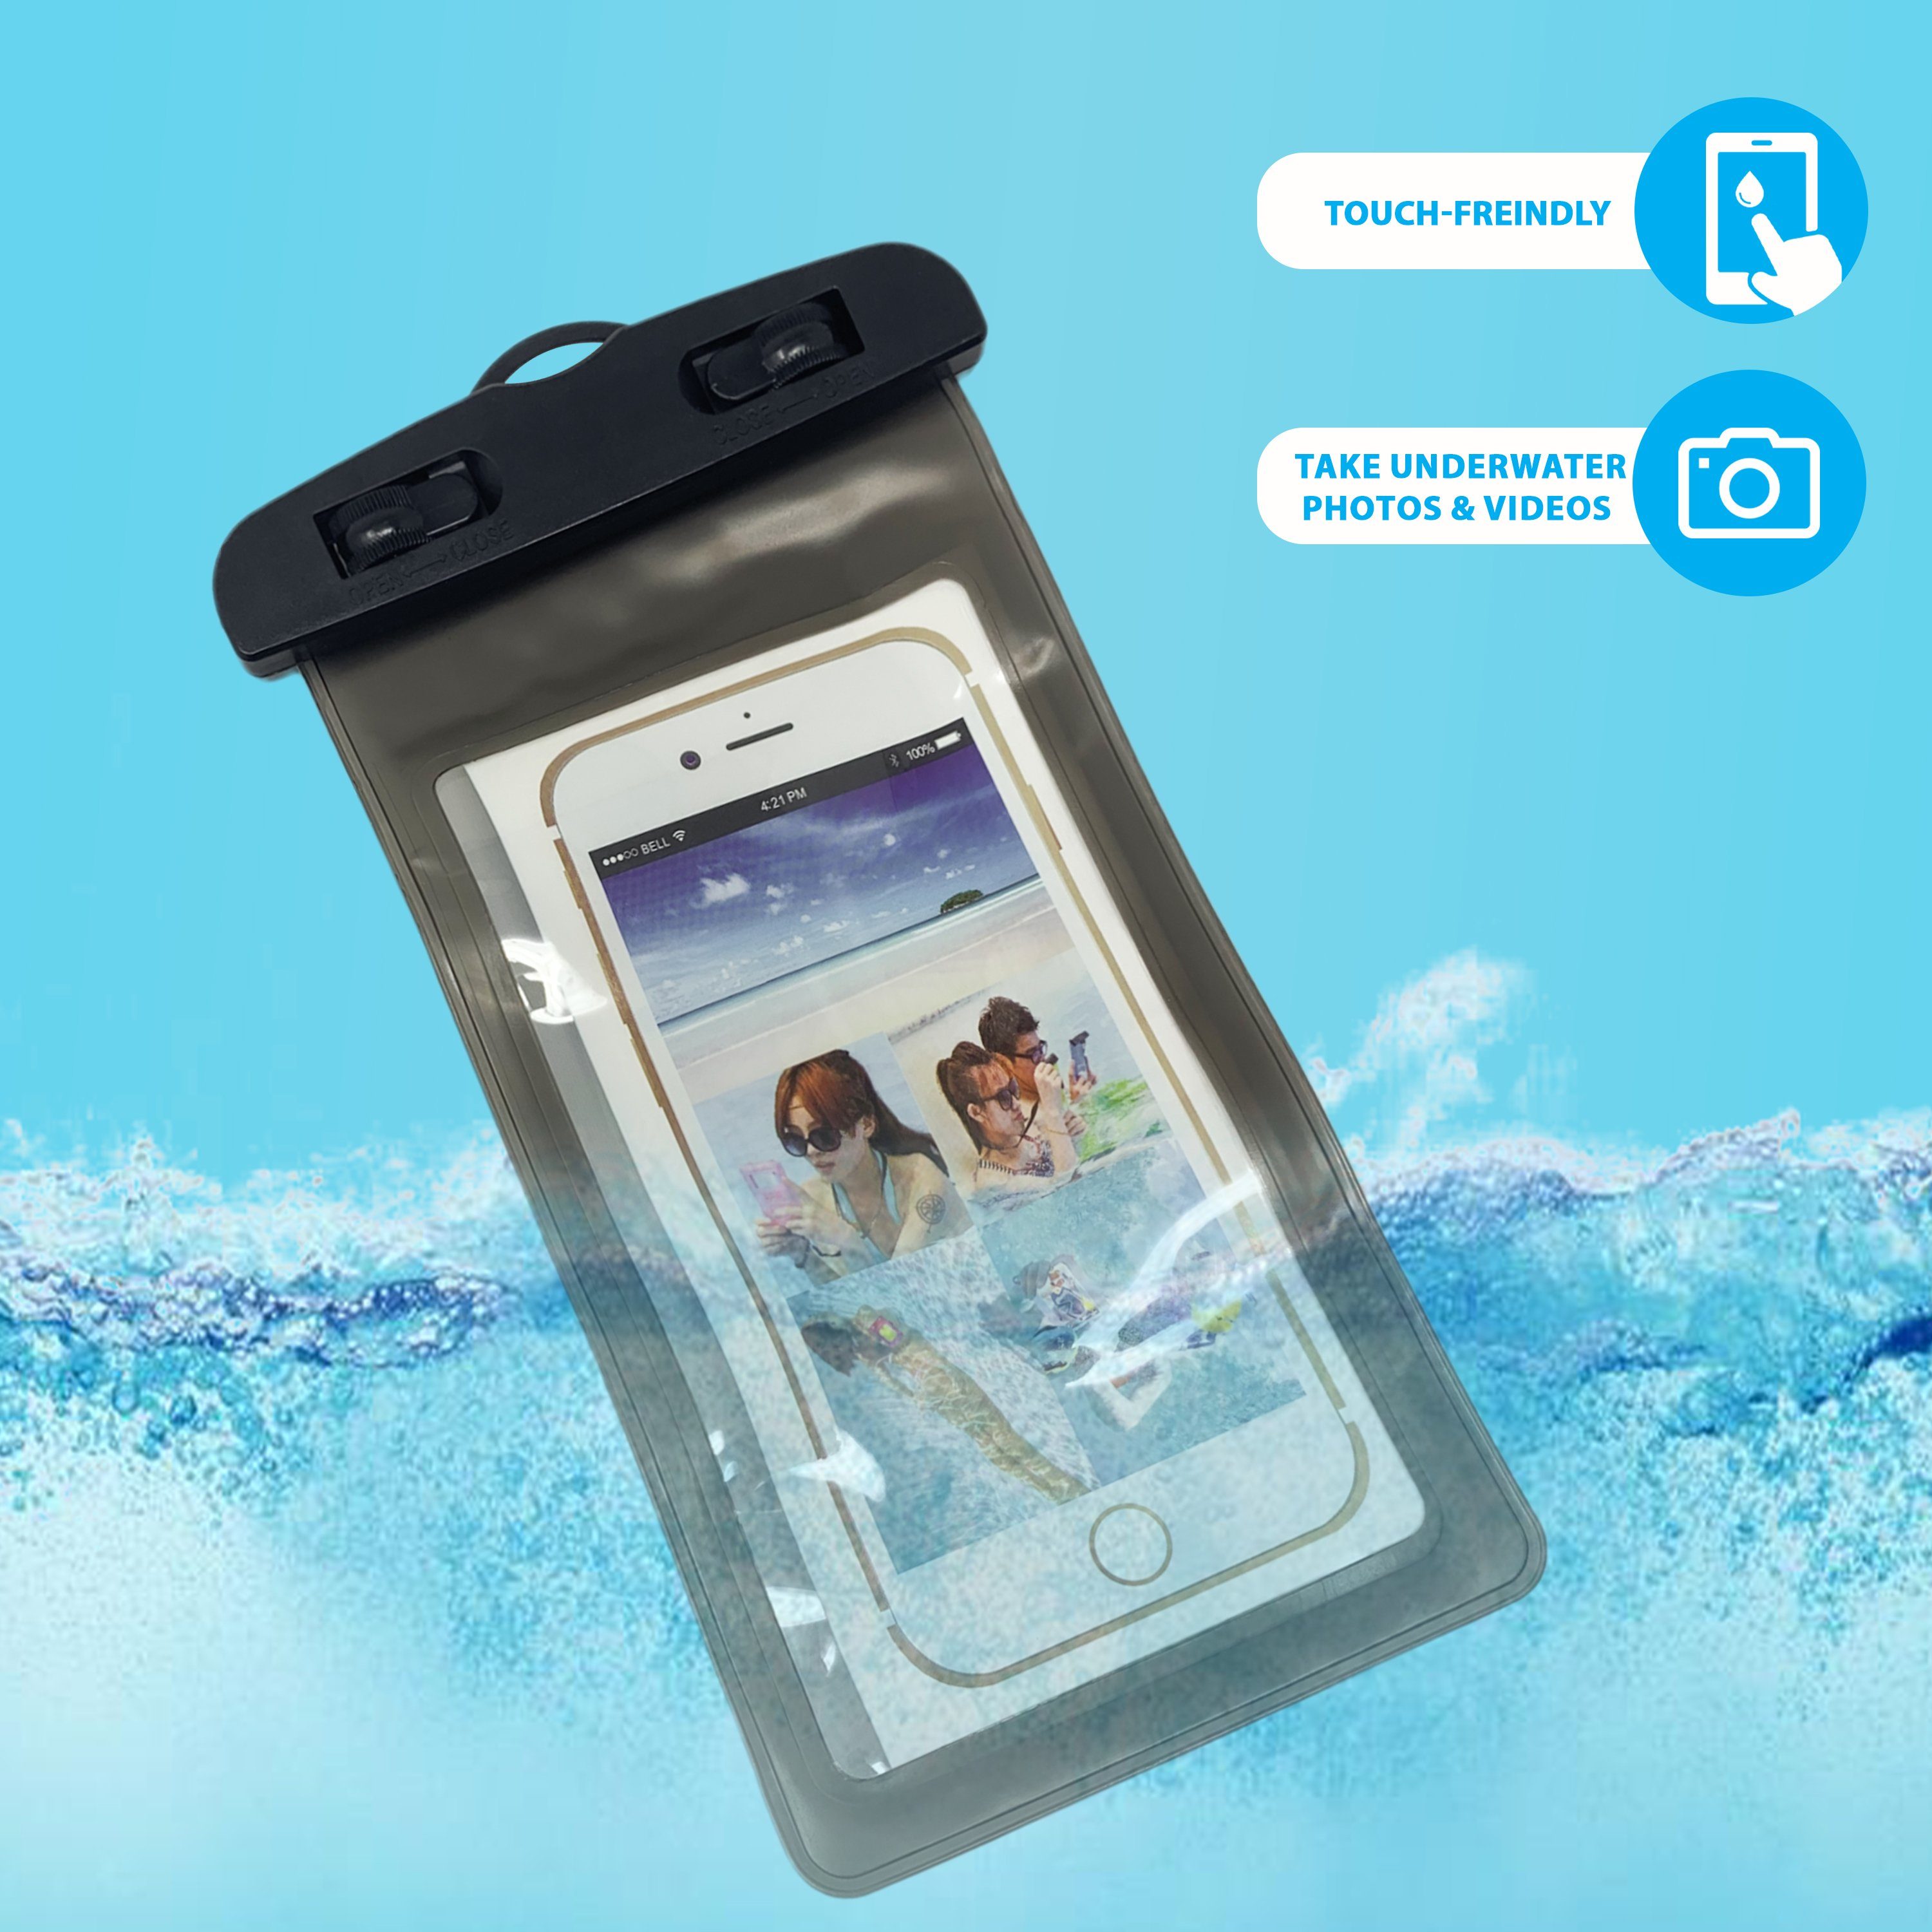 H-basics Handytasche Wasserdichte für Handy Schnee, Schmutz, Hülle Tasche alle - Schwarz Sand, Smartphones Umhängeband